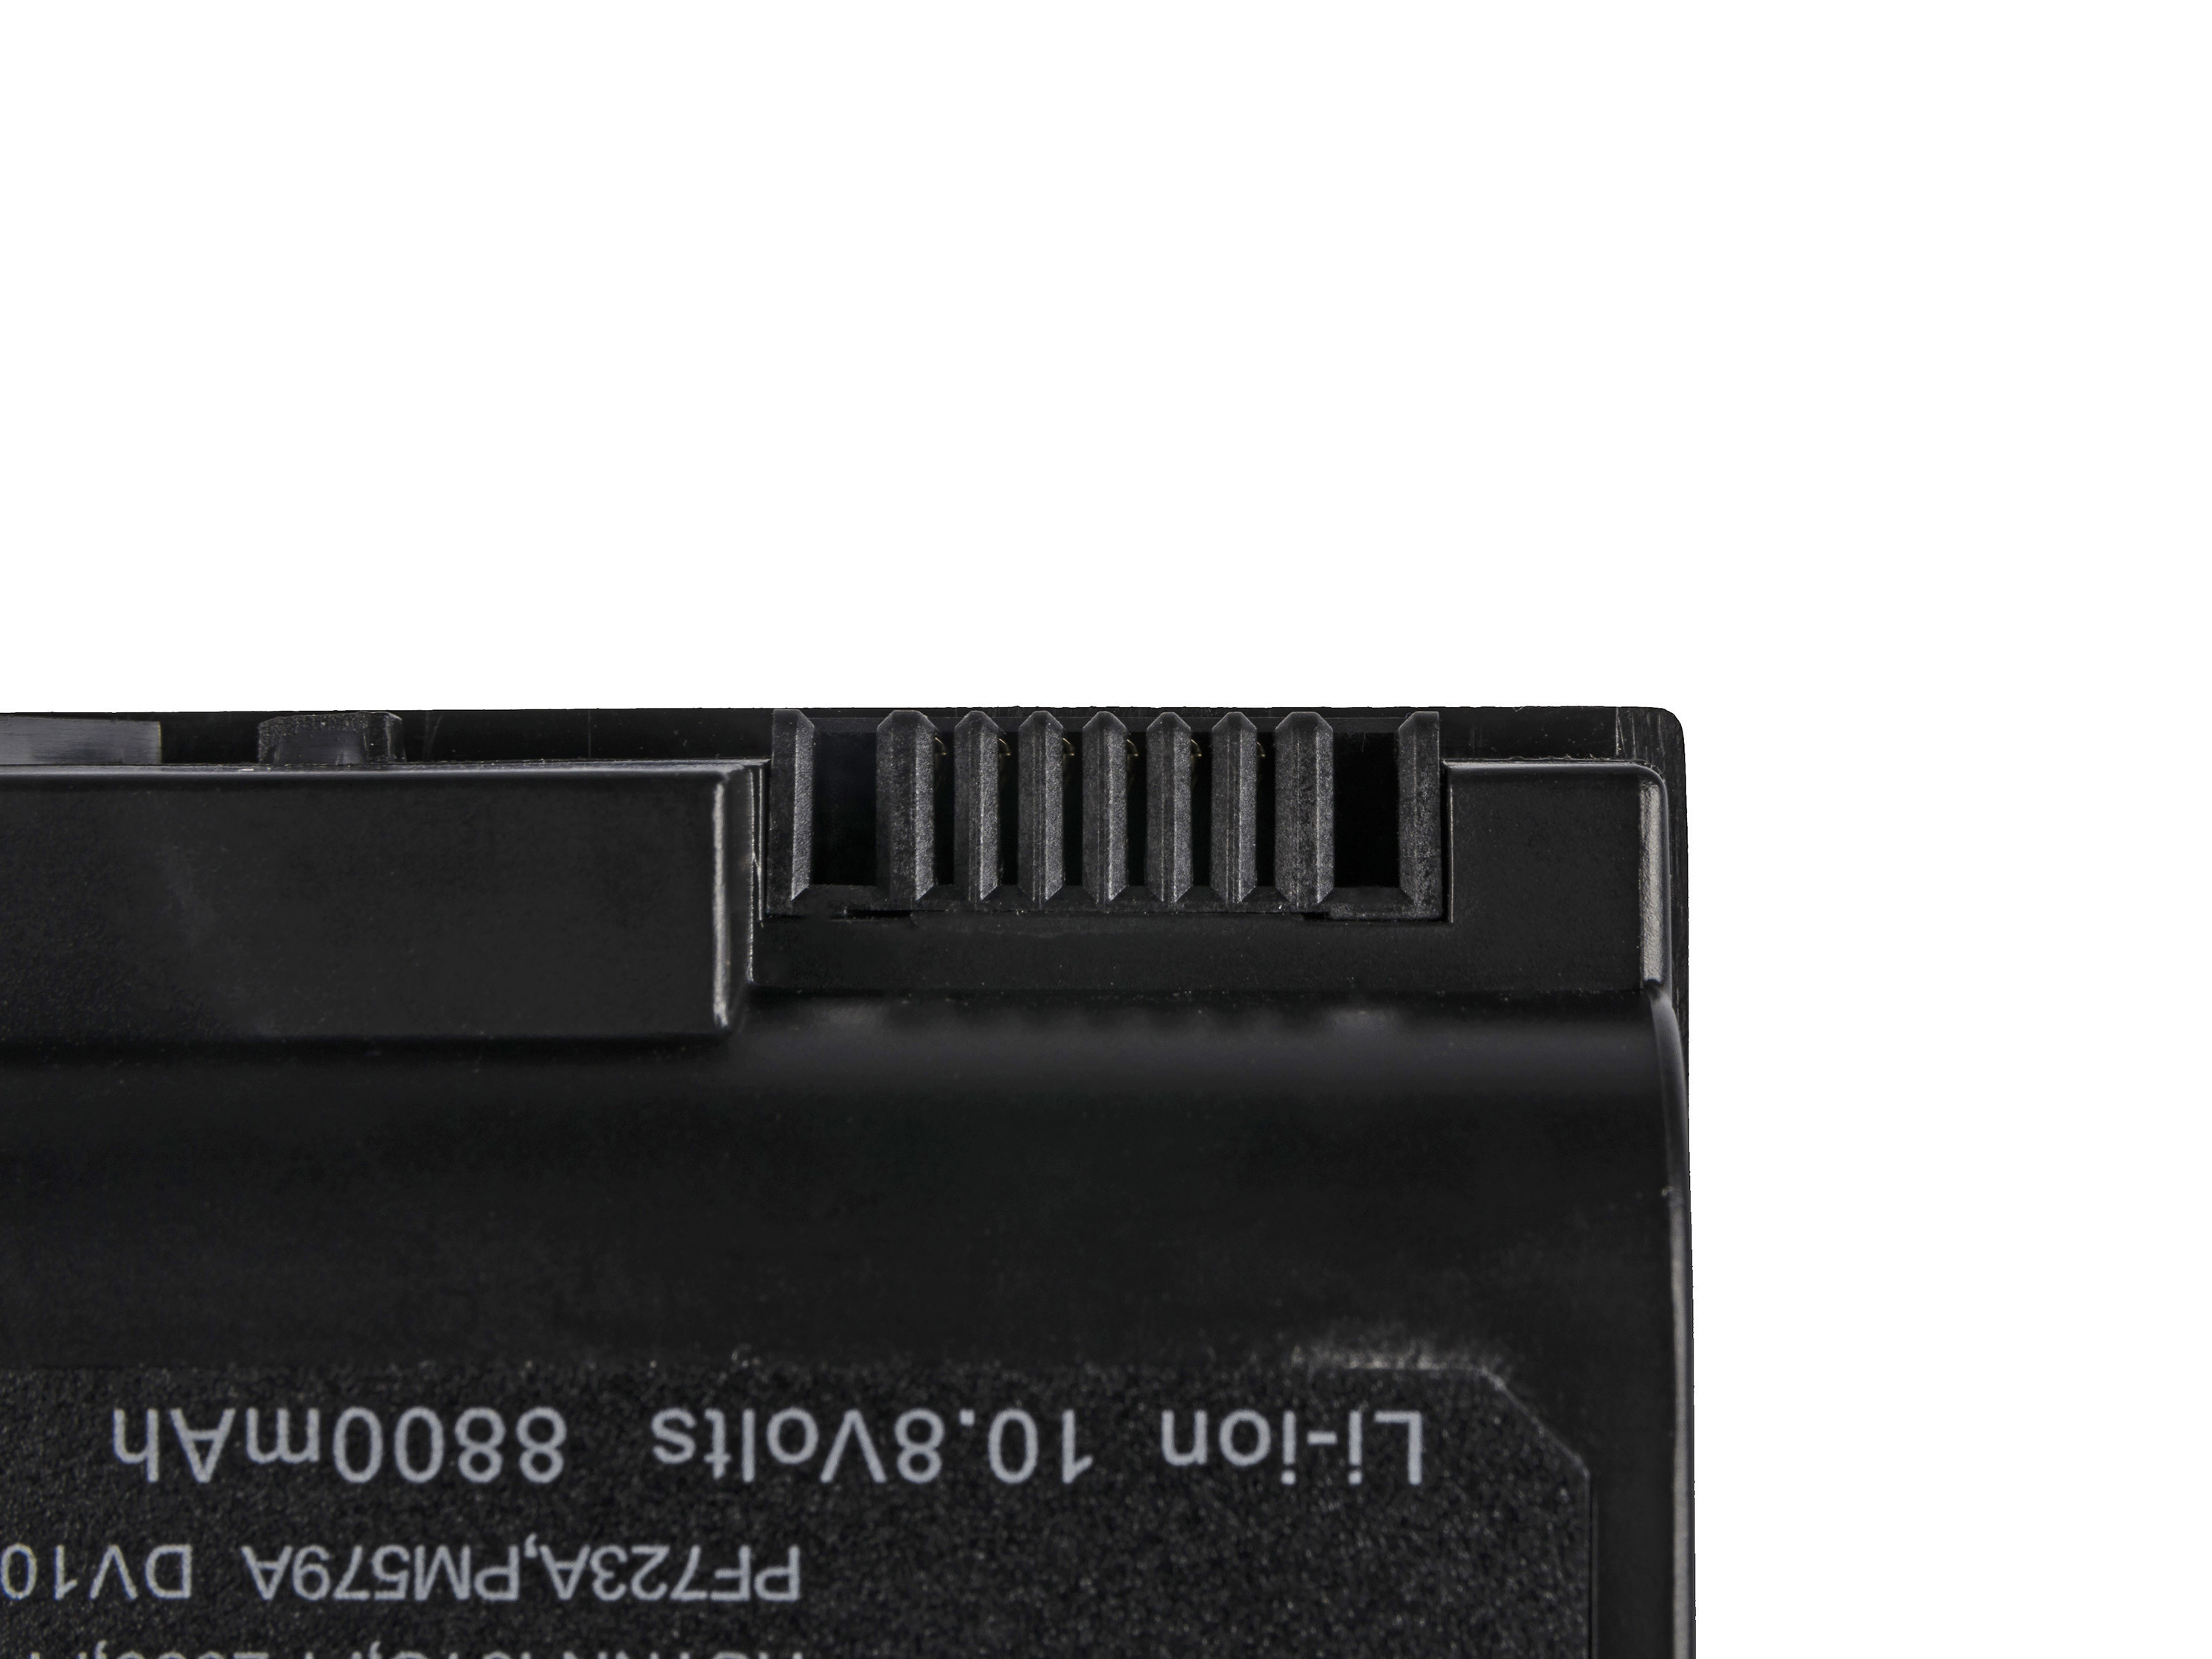 Green Cell Battery HSTNN-LB09 for HP Pavilion DV1000 DV4000 DV5000